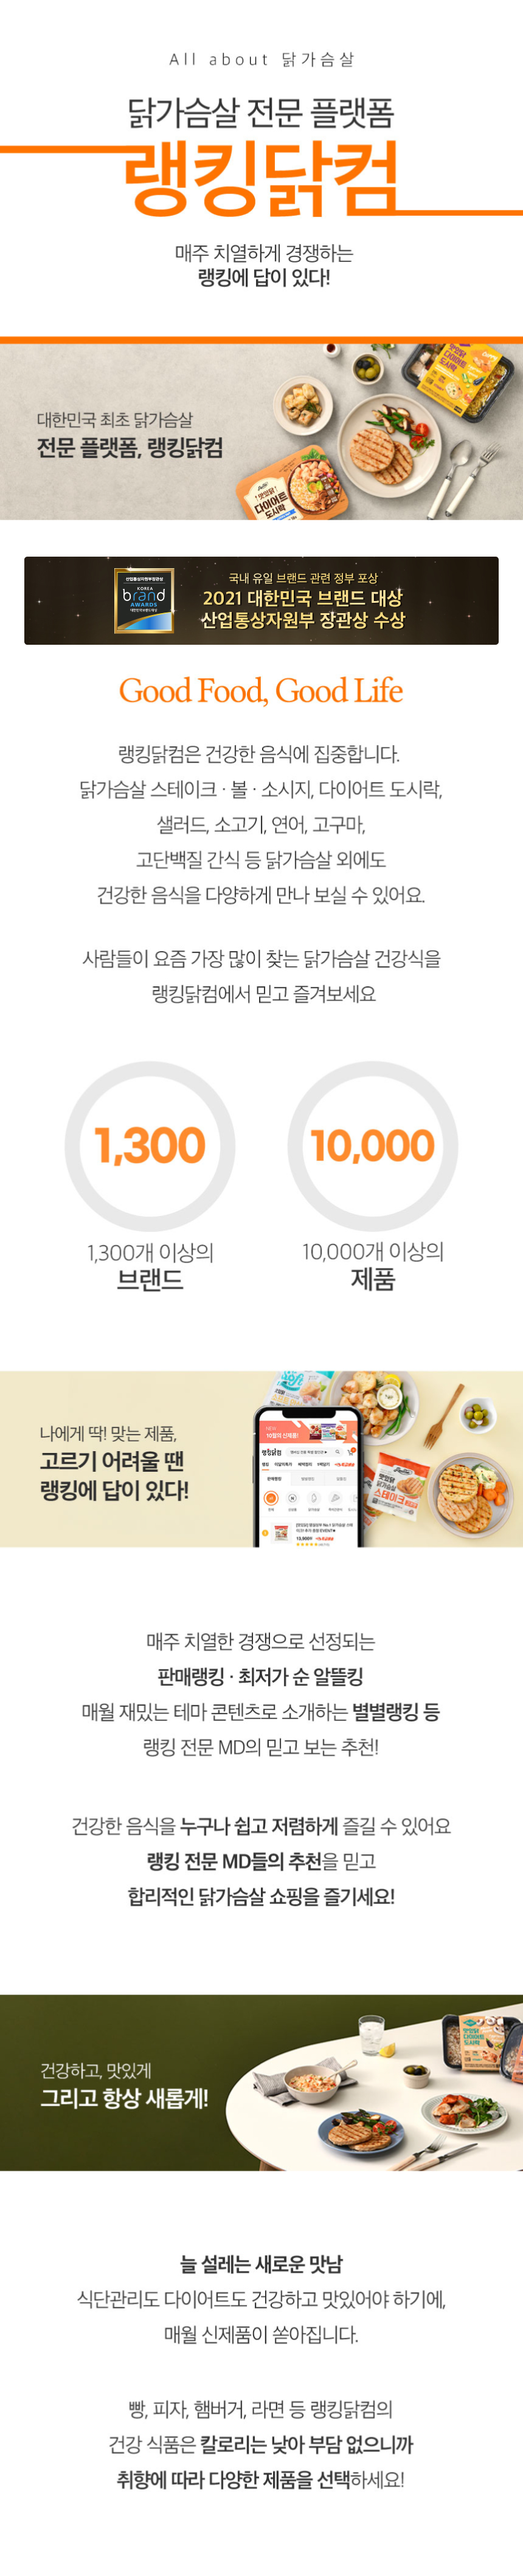 닭가슴살 전문 플랫폼 - 랭킹닭컴 회사소개